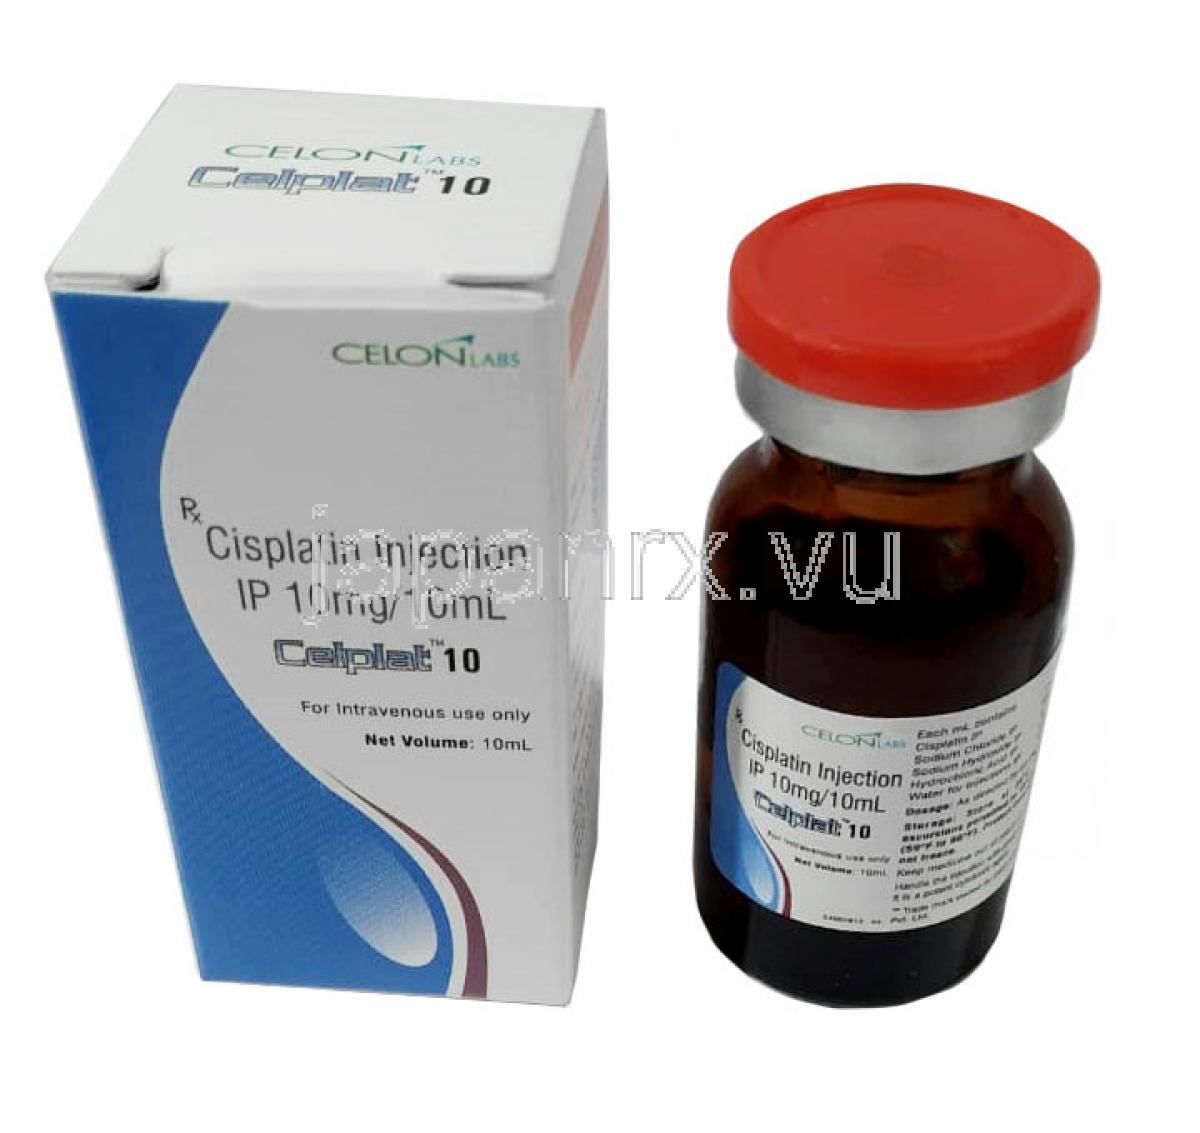 セルプラ 10, シスプラチン 10 mg(10mLあたり), 注射 10mL, 製造元：Celon, 箱, ボトル